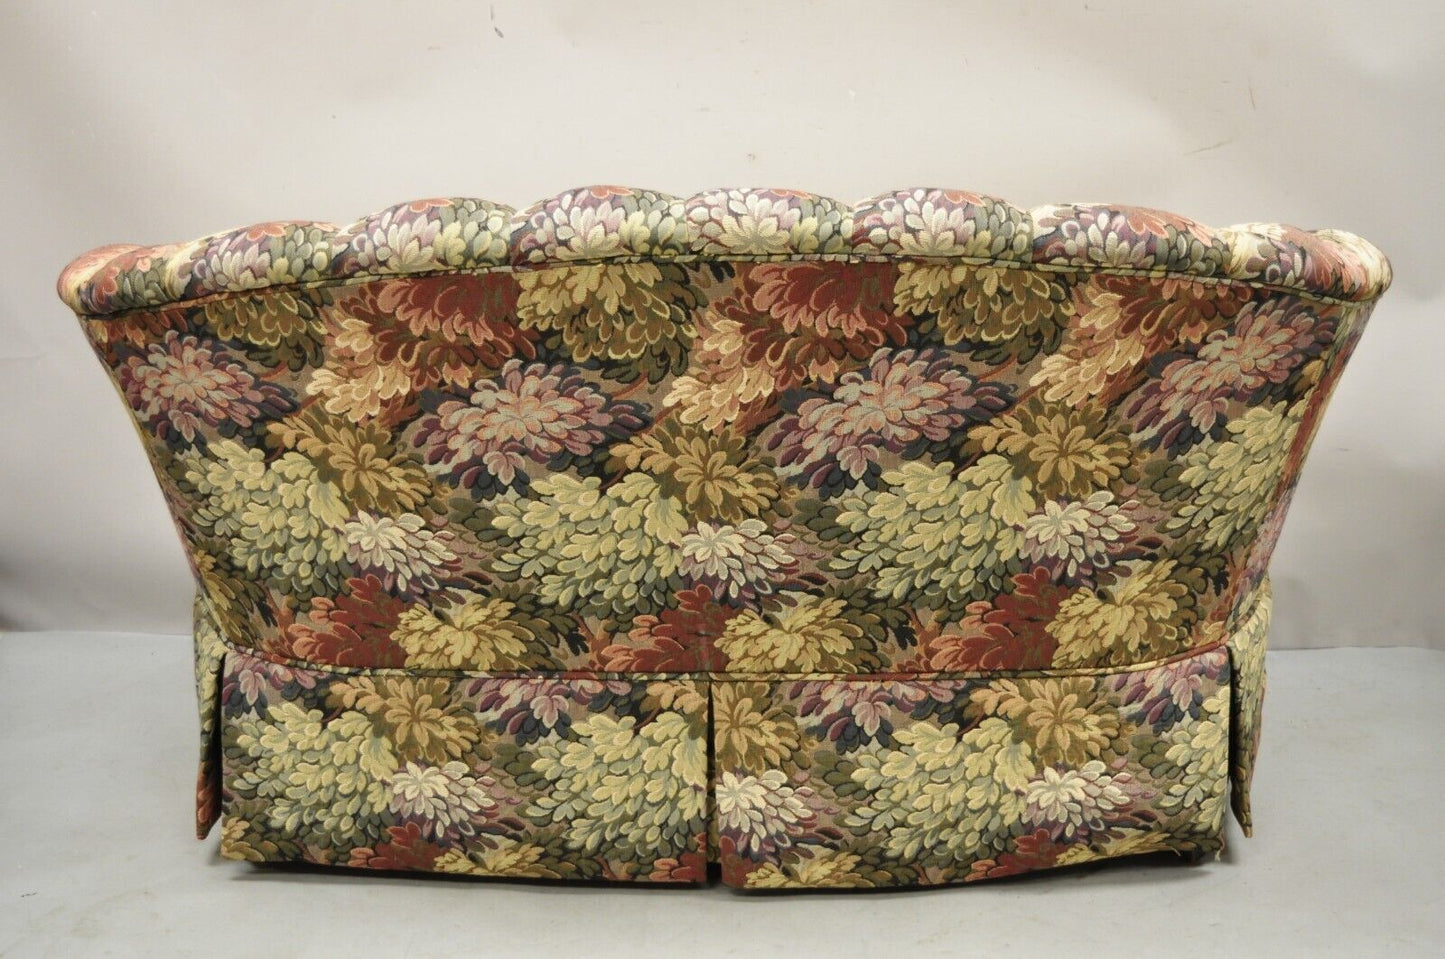 Harden Floral Print 60" Fully Upholstered Loveseat Settee Sofa